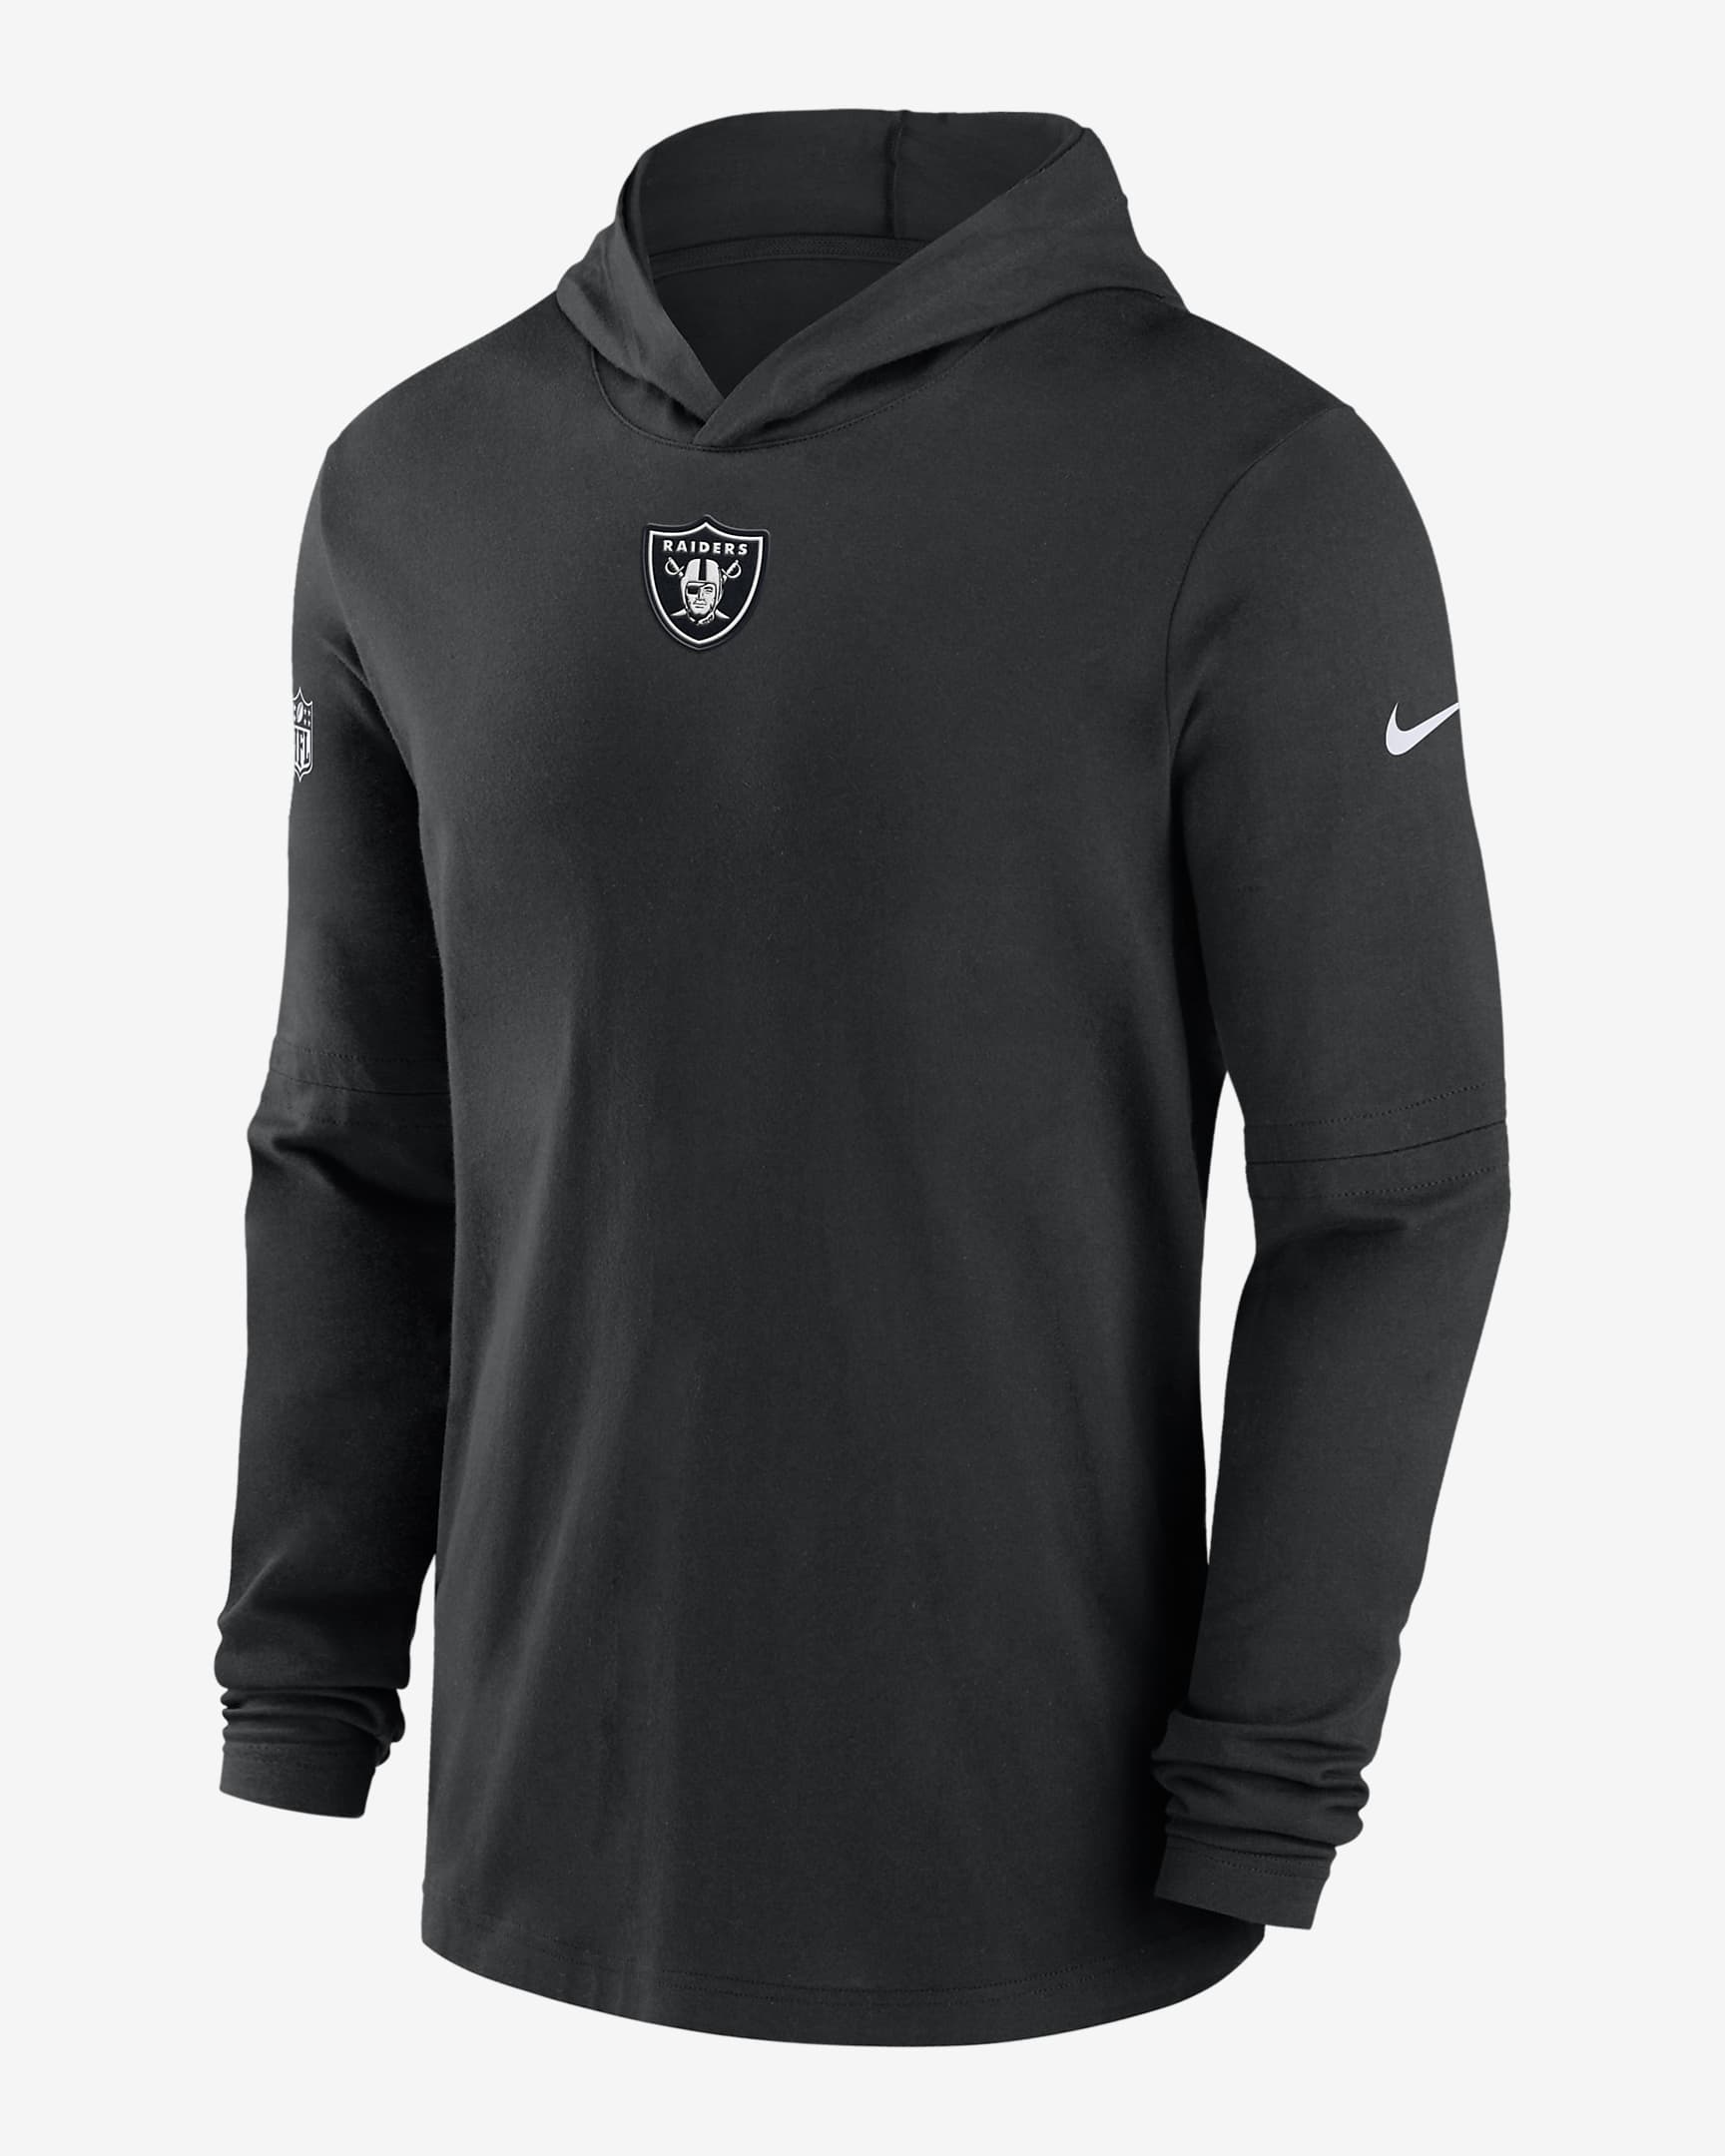 Las Vegas Raiders Sideline Men’s Nike Dri-FIT NFL Long-Sleeve Hooded ...